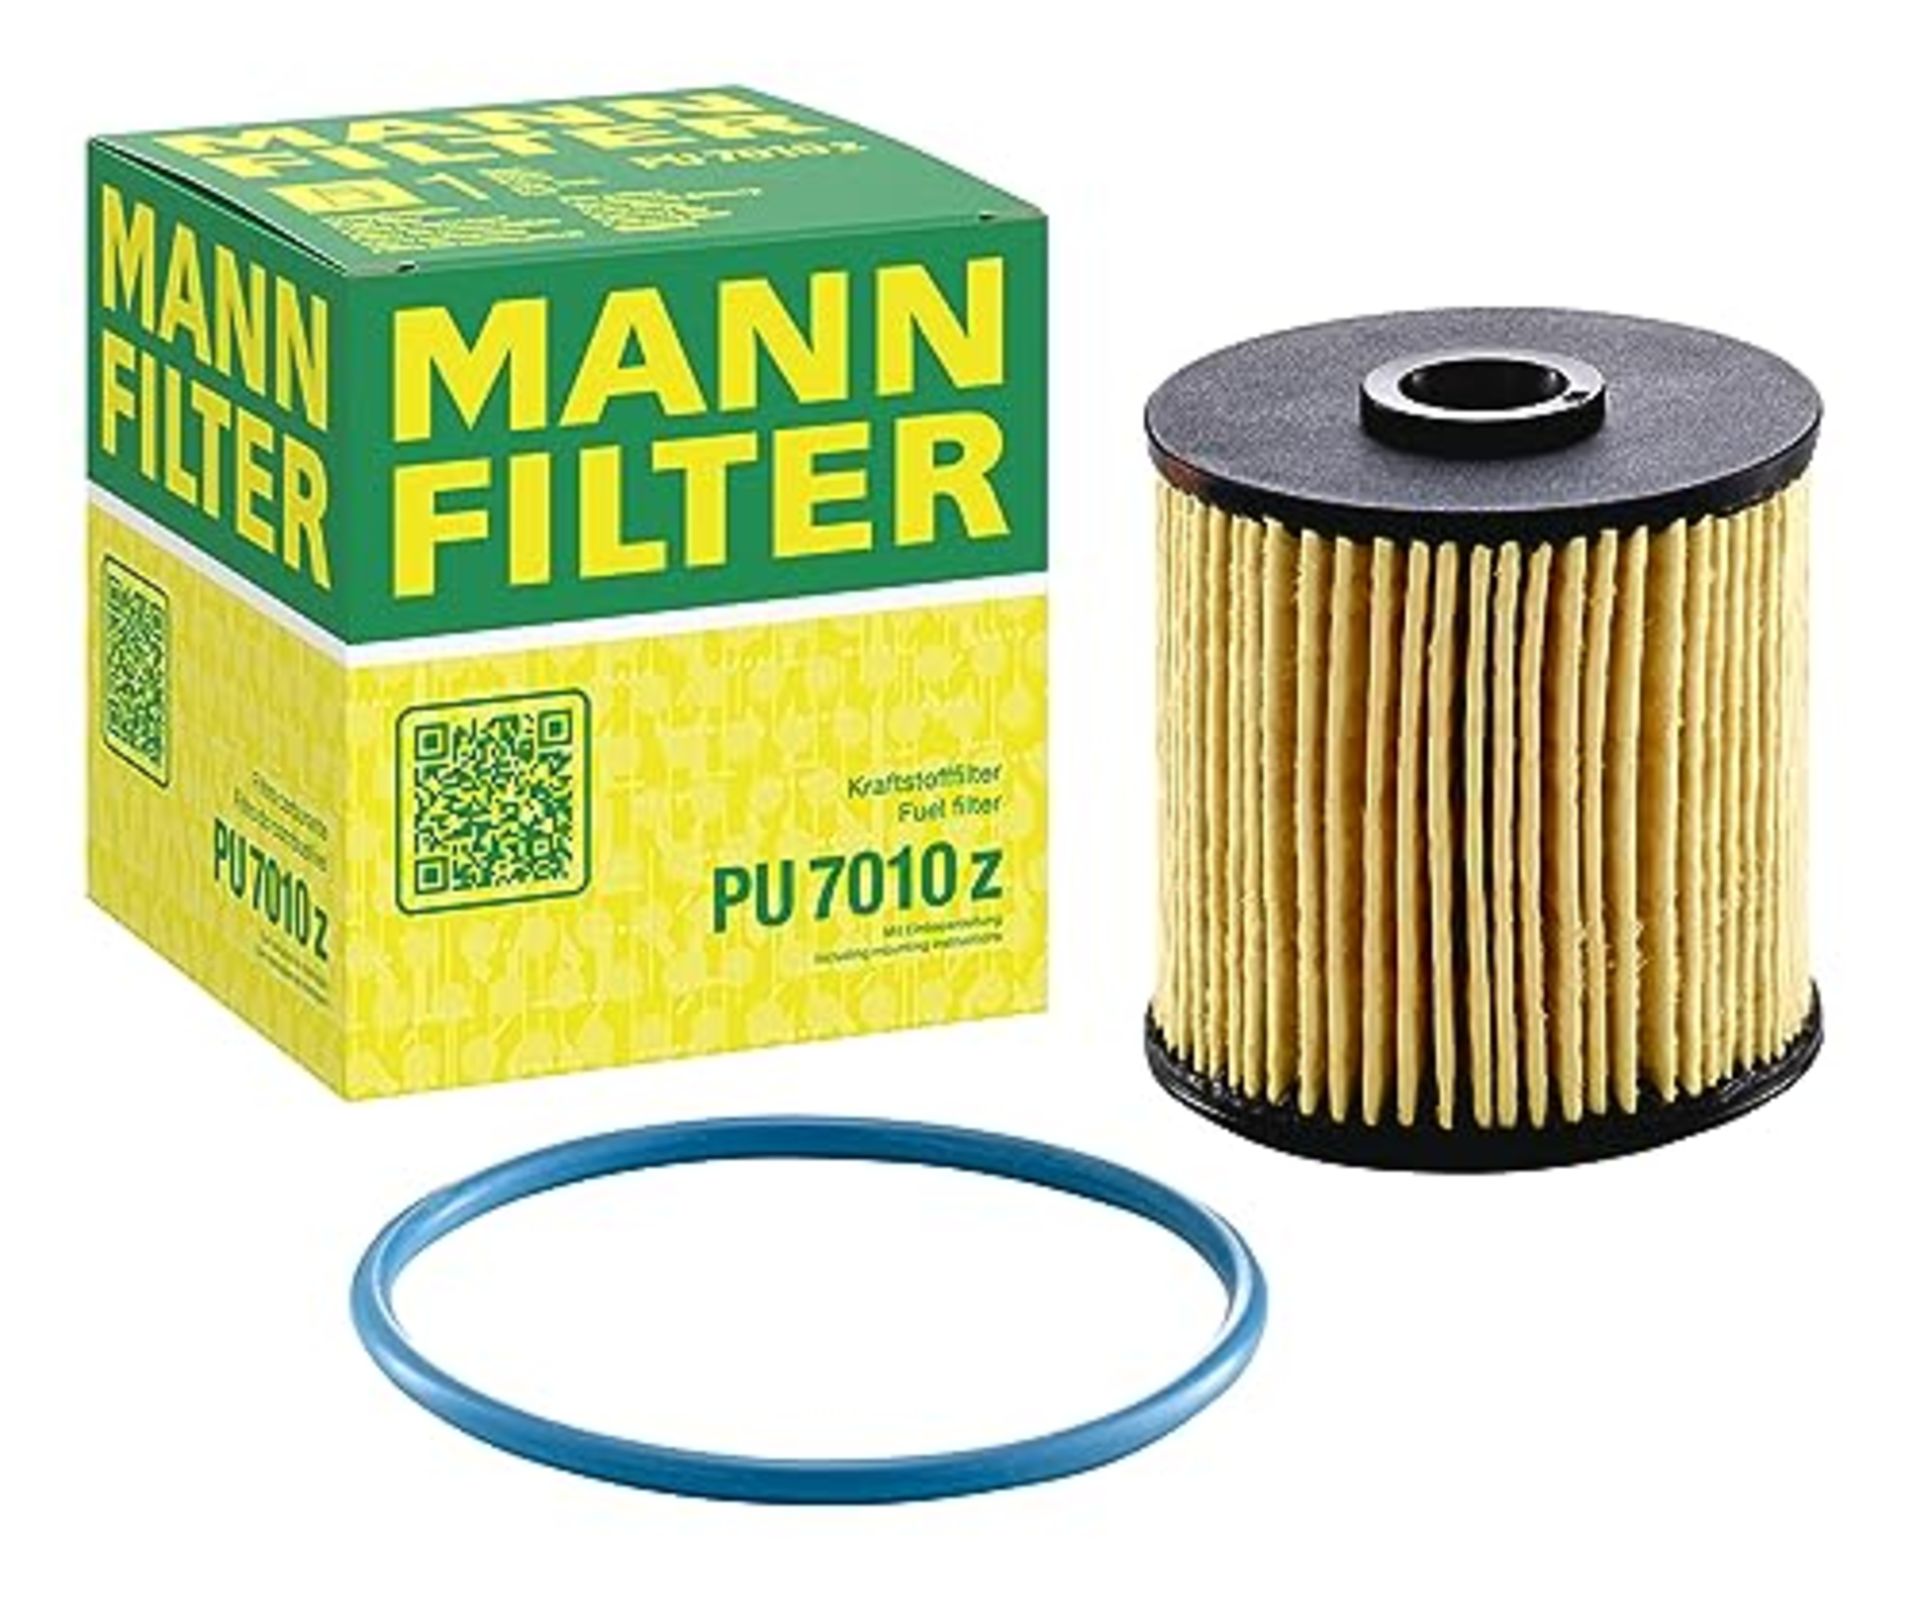 MANN-FILTER PU 7010 z Fuel Filter - Fuel Filter Set with Gasket / Gasket set - For Car